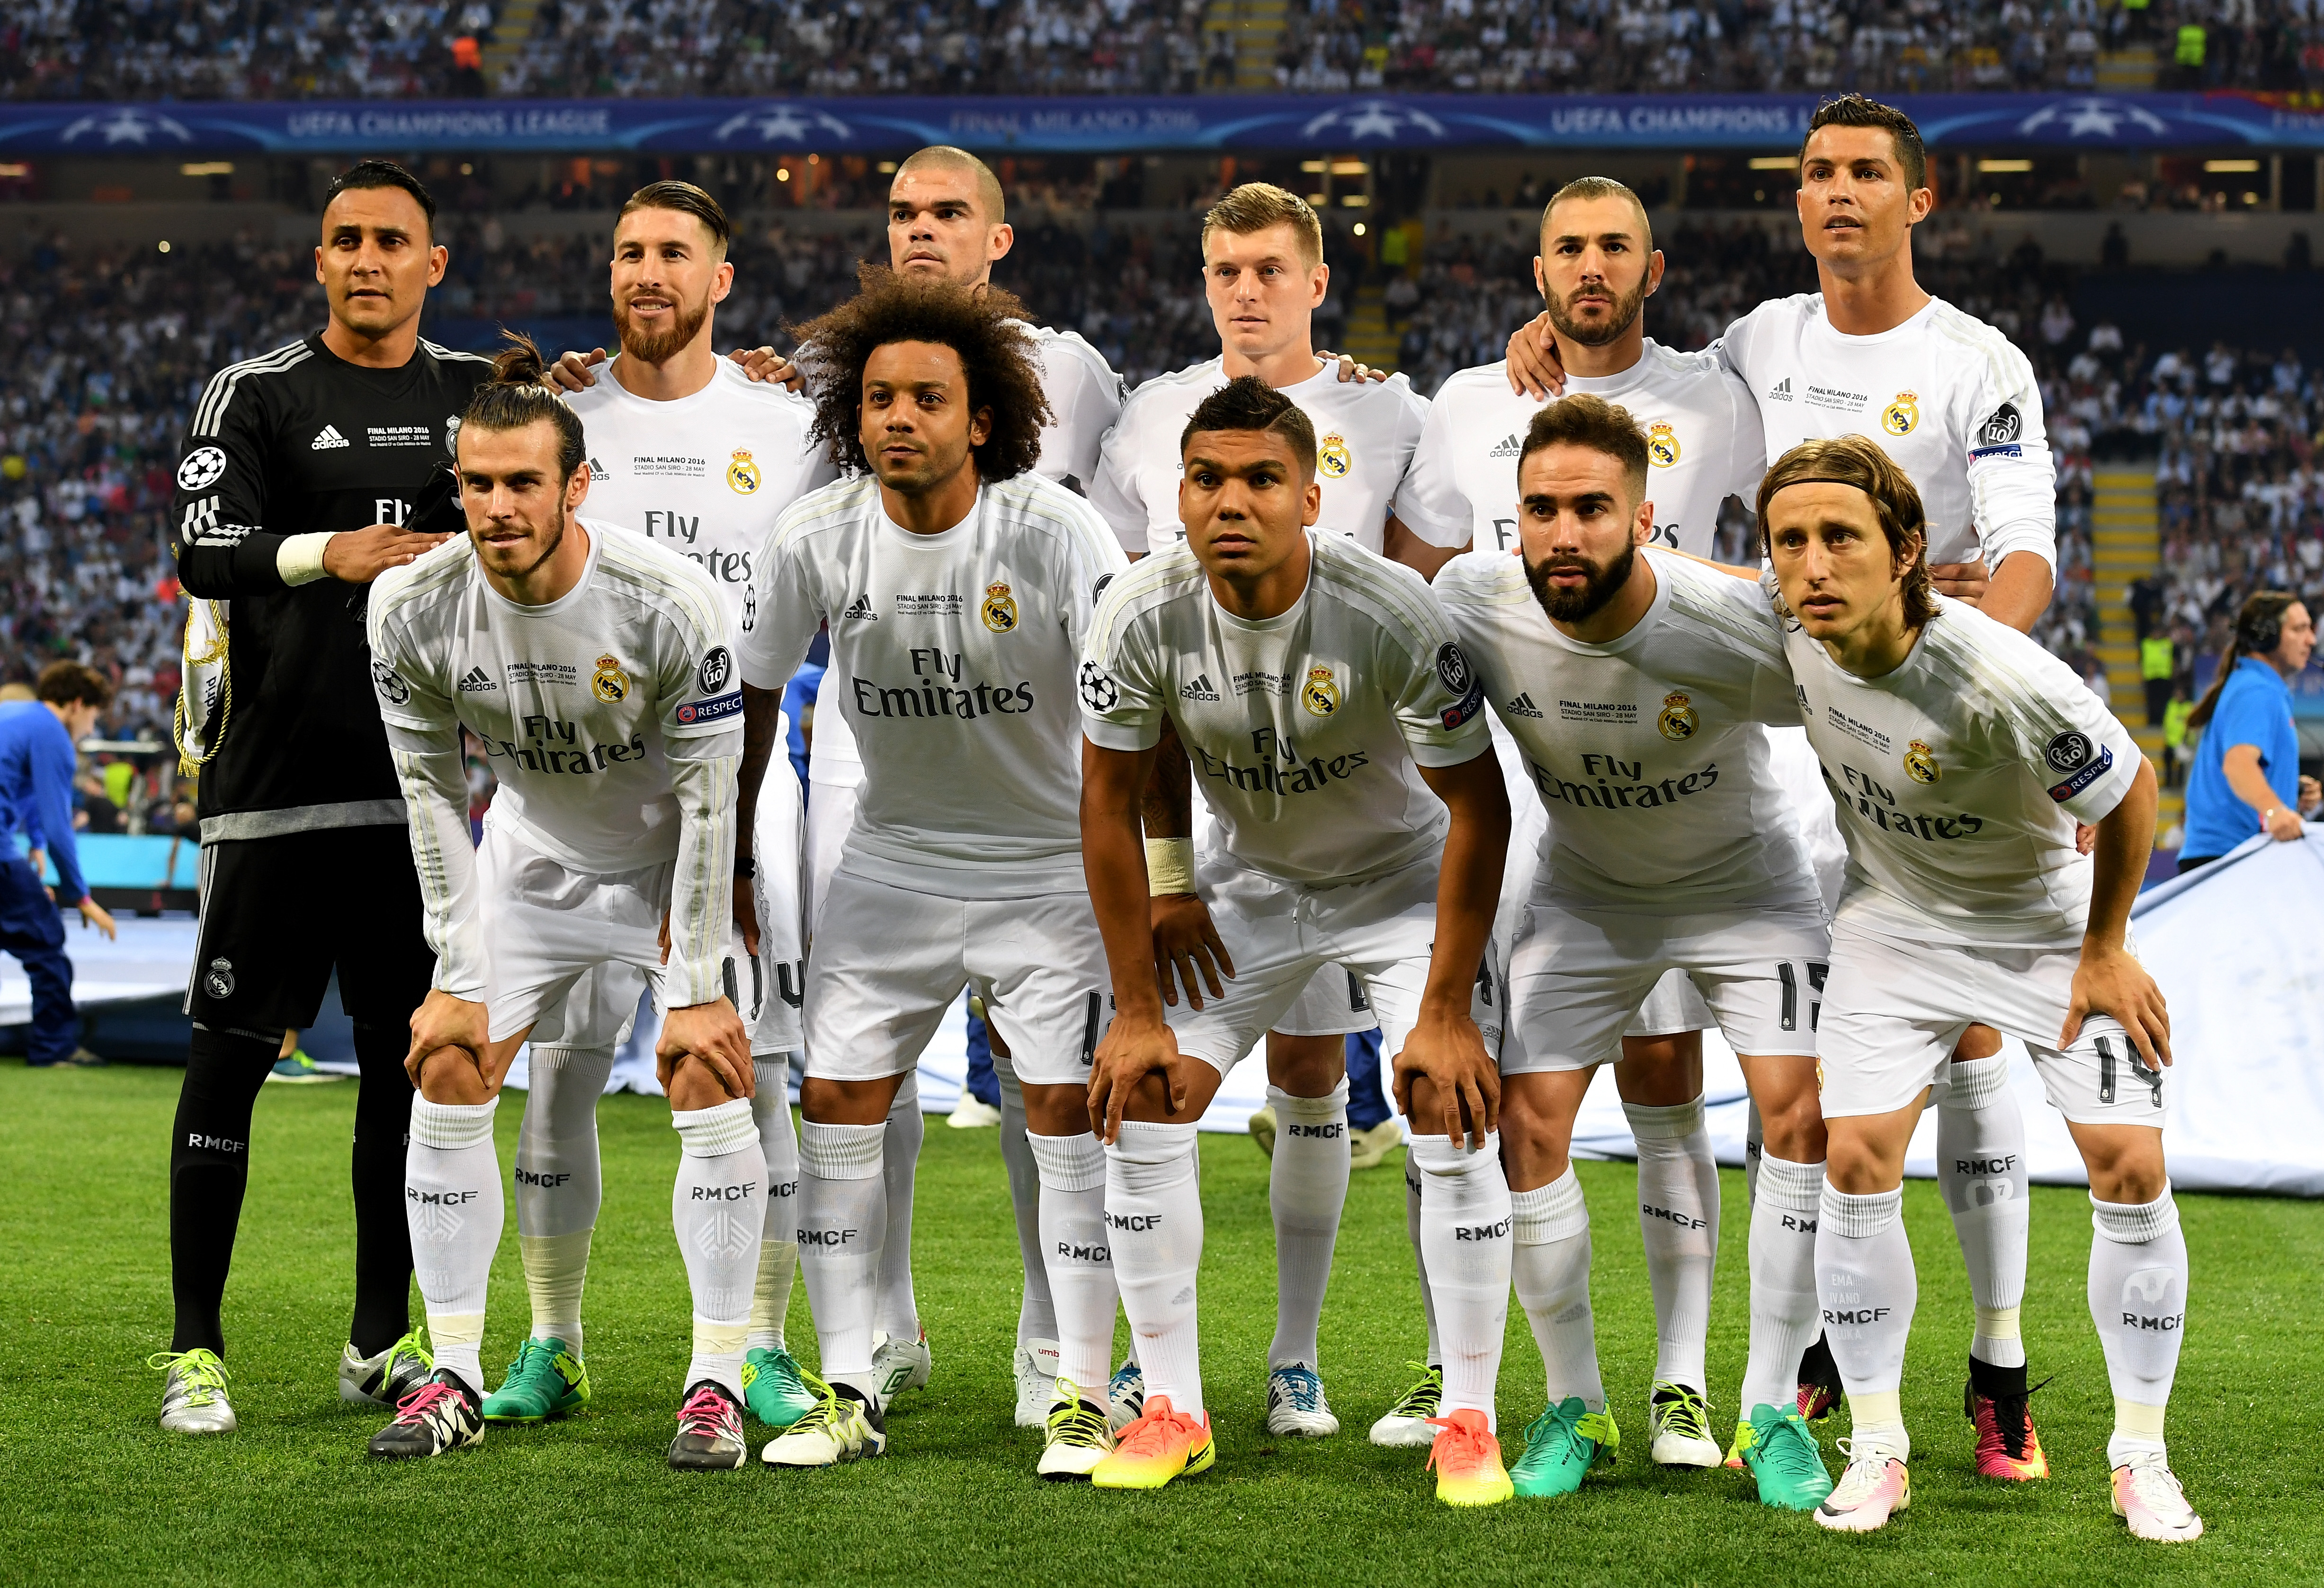 15 апреля 2016 года. Команда Реал Мадрид 2016. Команда Реал Мадрид 2015. Фото команды Реал Мадрид 2016. Состав Реал Мадрида 2016 года.